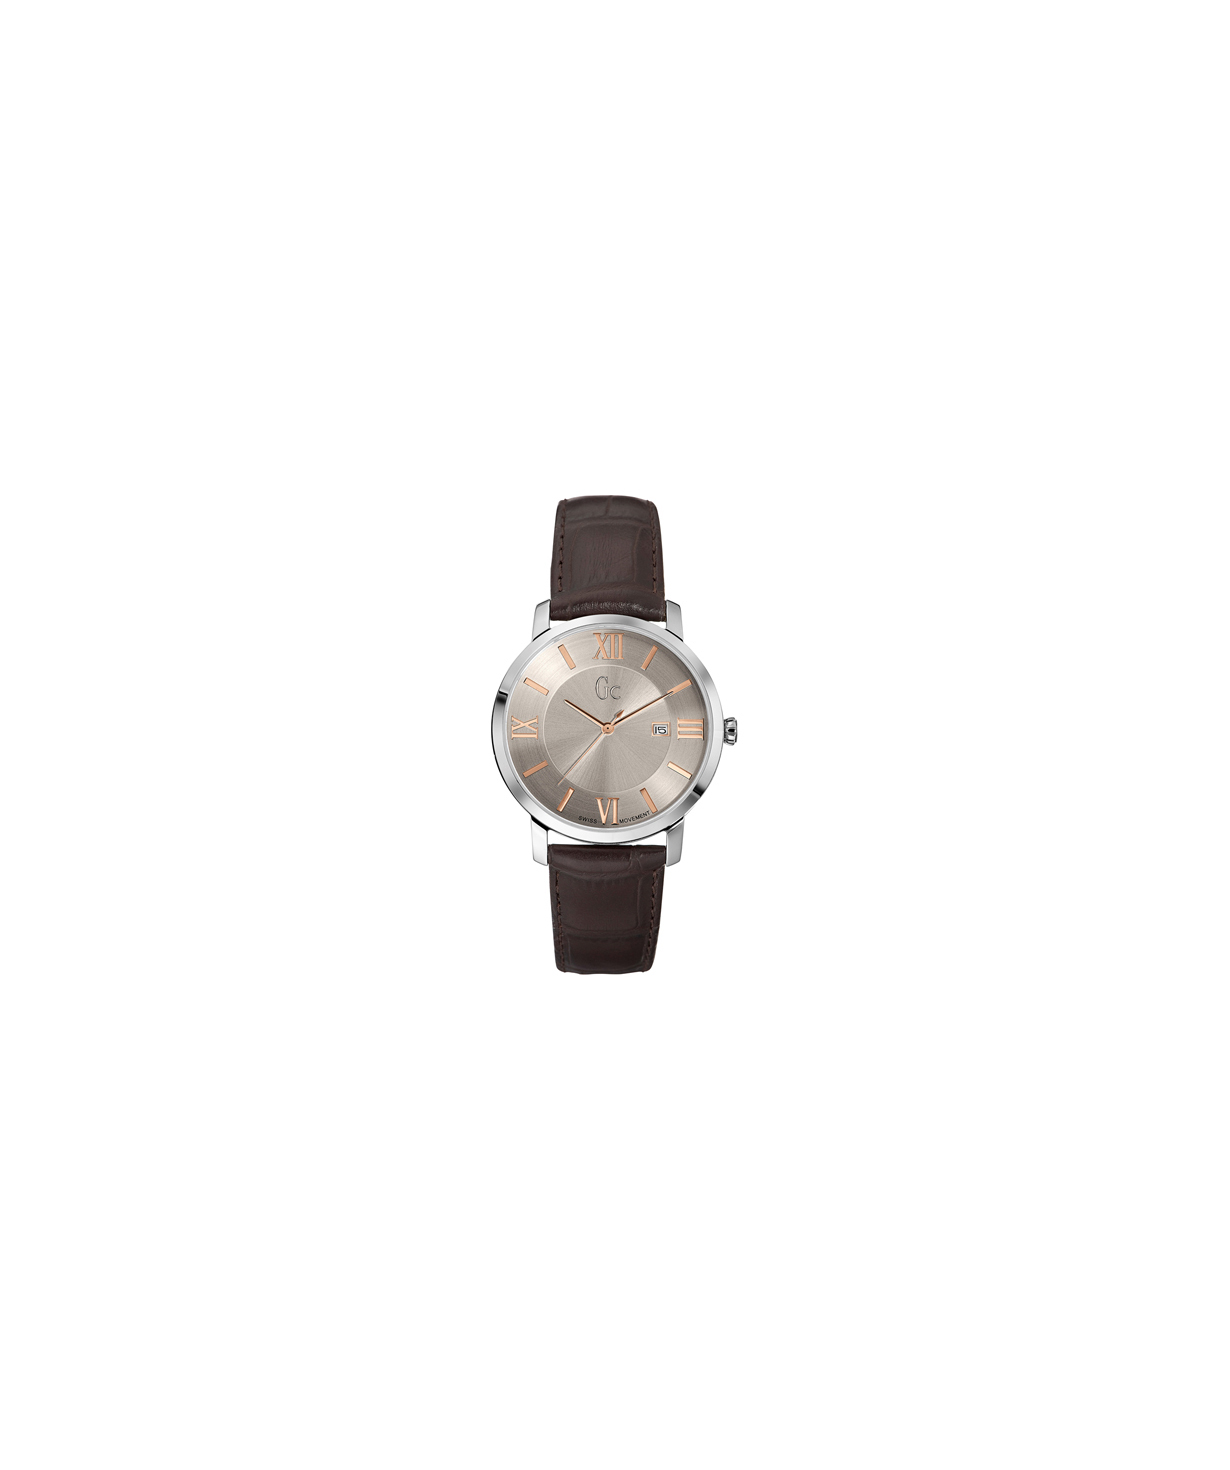 Ժամացույց «Gc» ձեռքի   X60016G1S